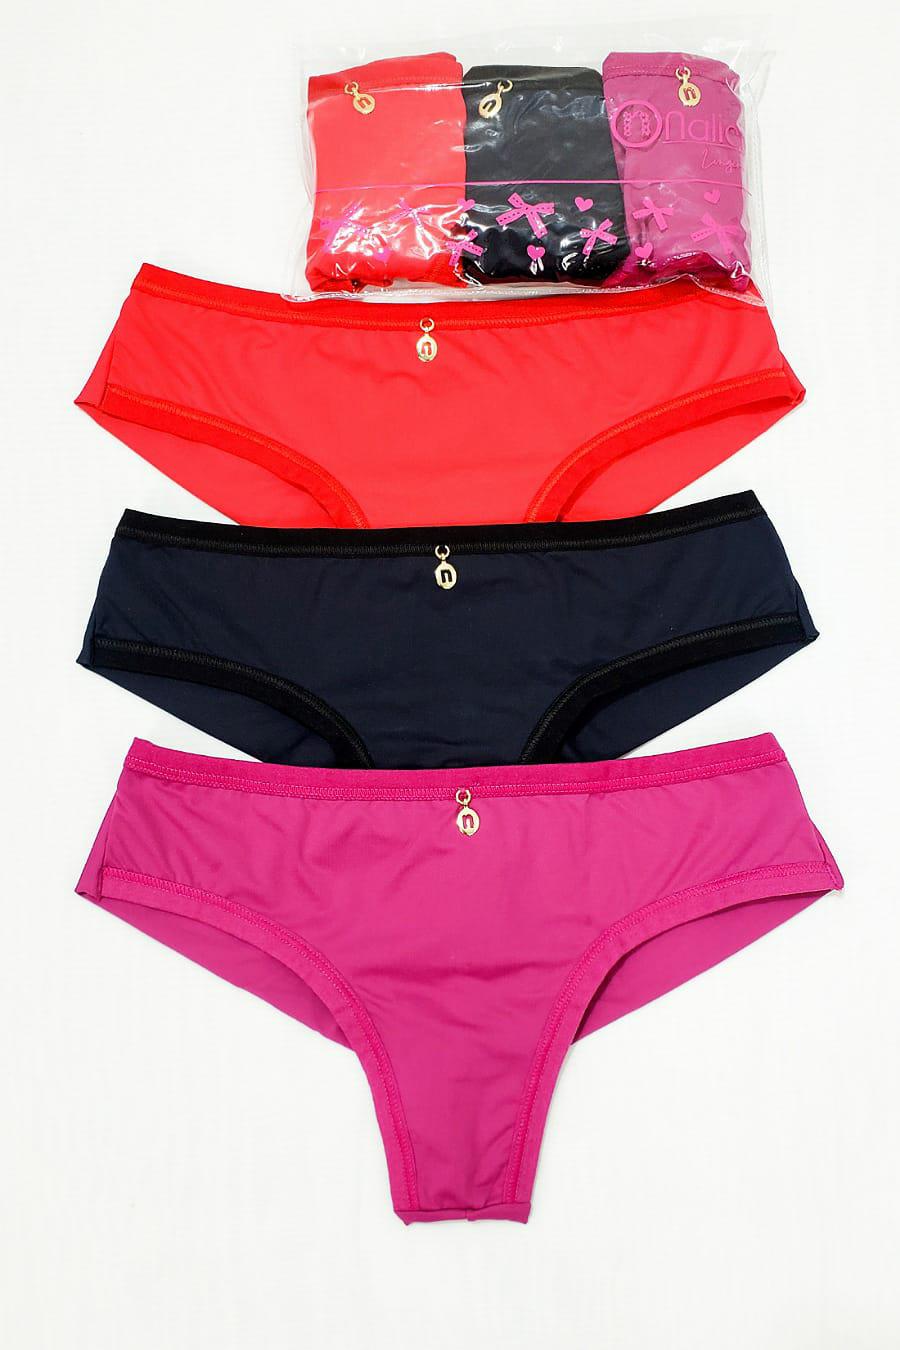 Buy C String Bikini at Best Prices - Jumia Egypt